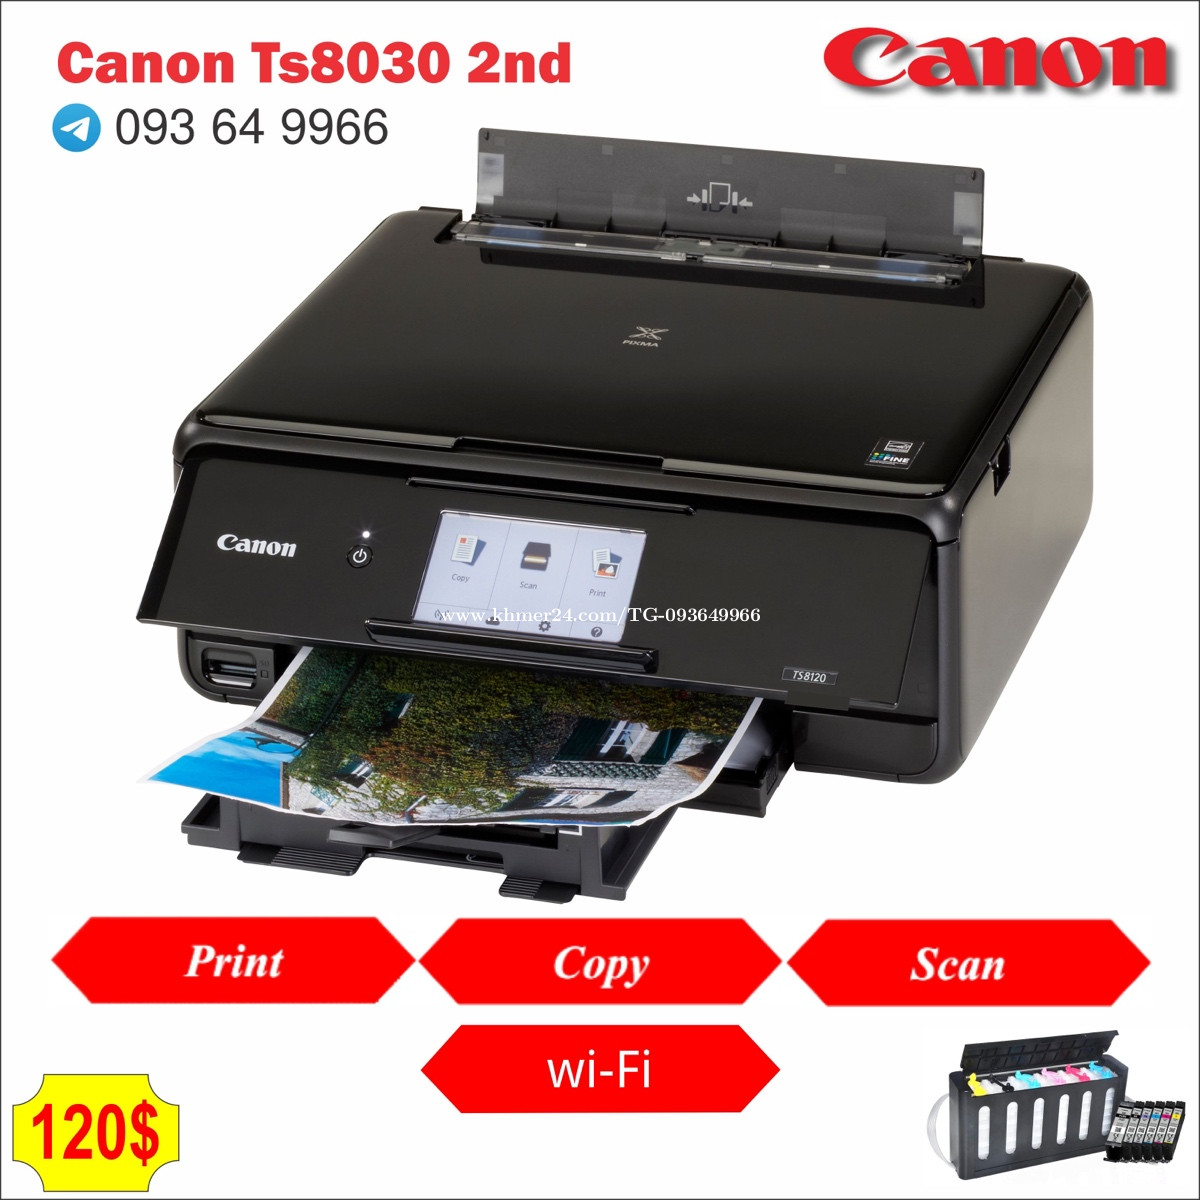 Canon ts8030 Price $110.00 in Phnom Penh, Cambodia - TG